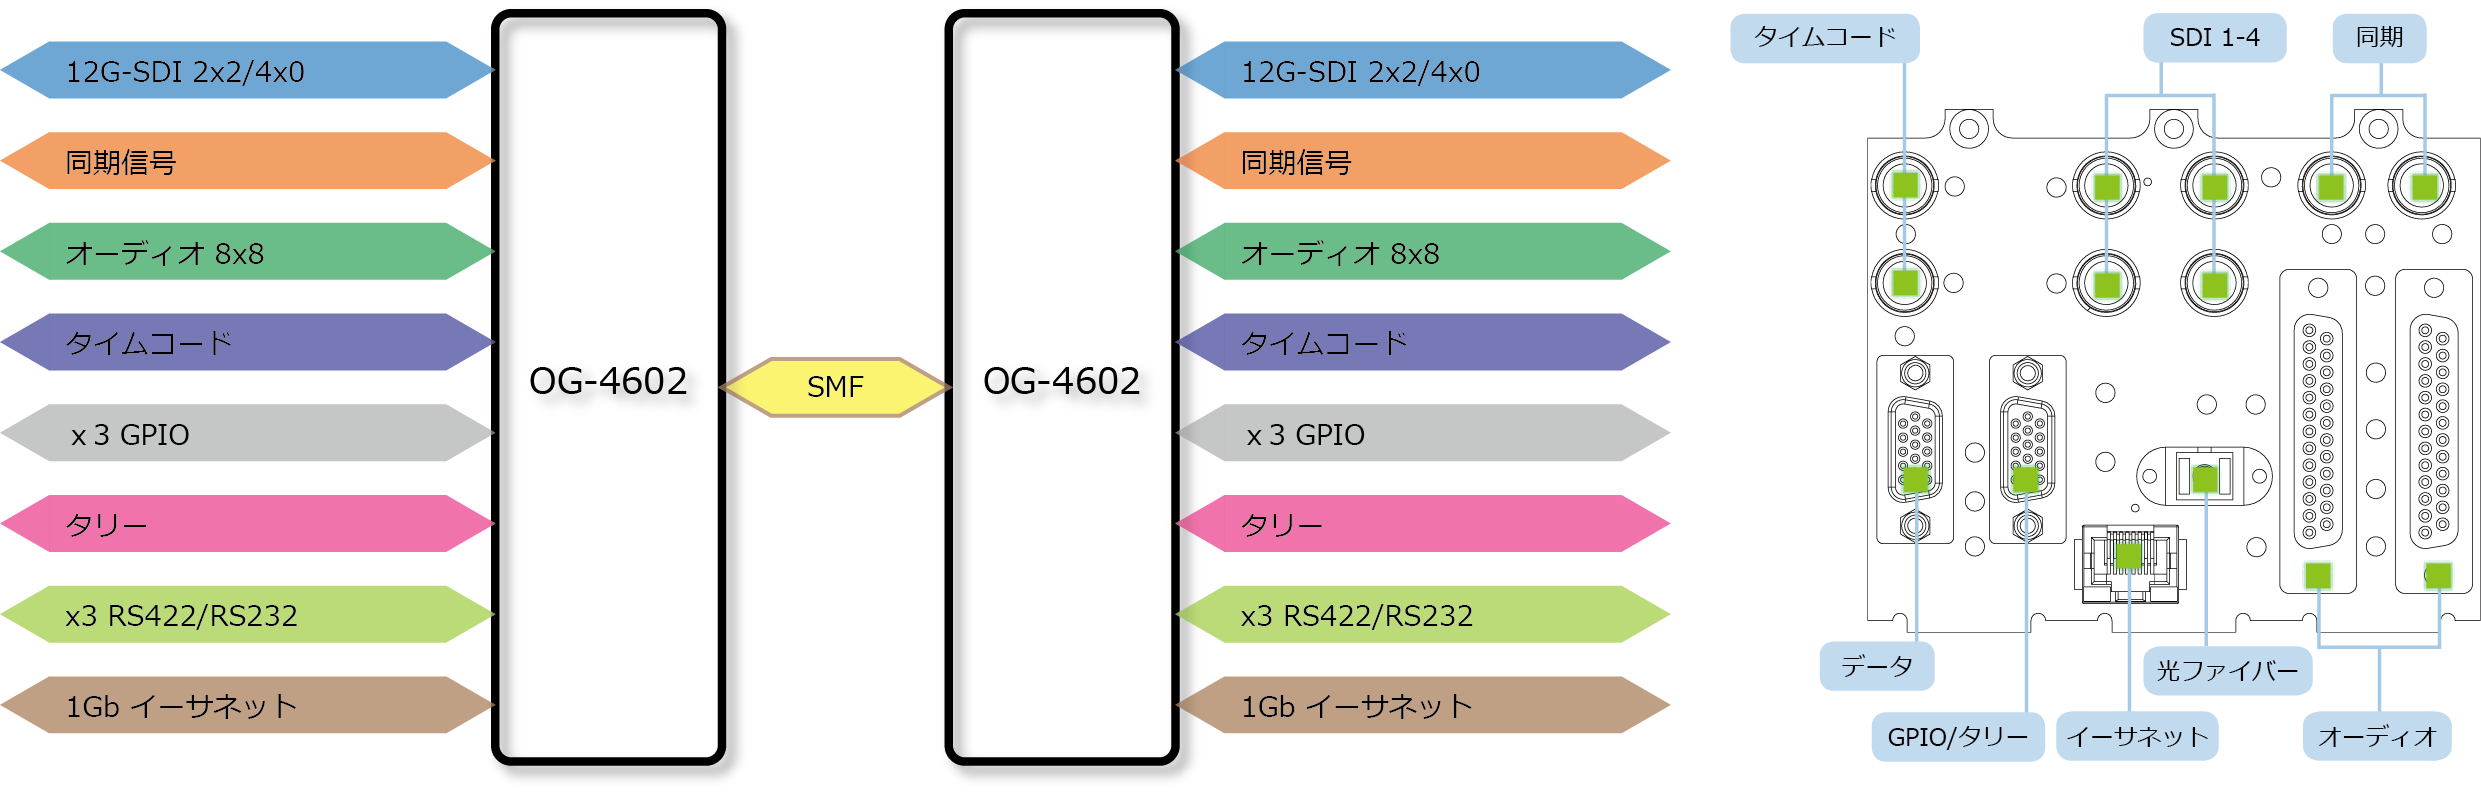 OG-4602 ブロック図/リアパネル図